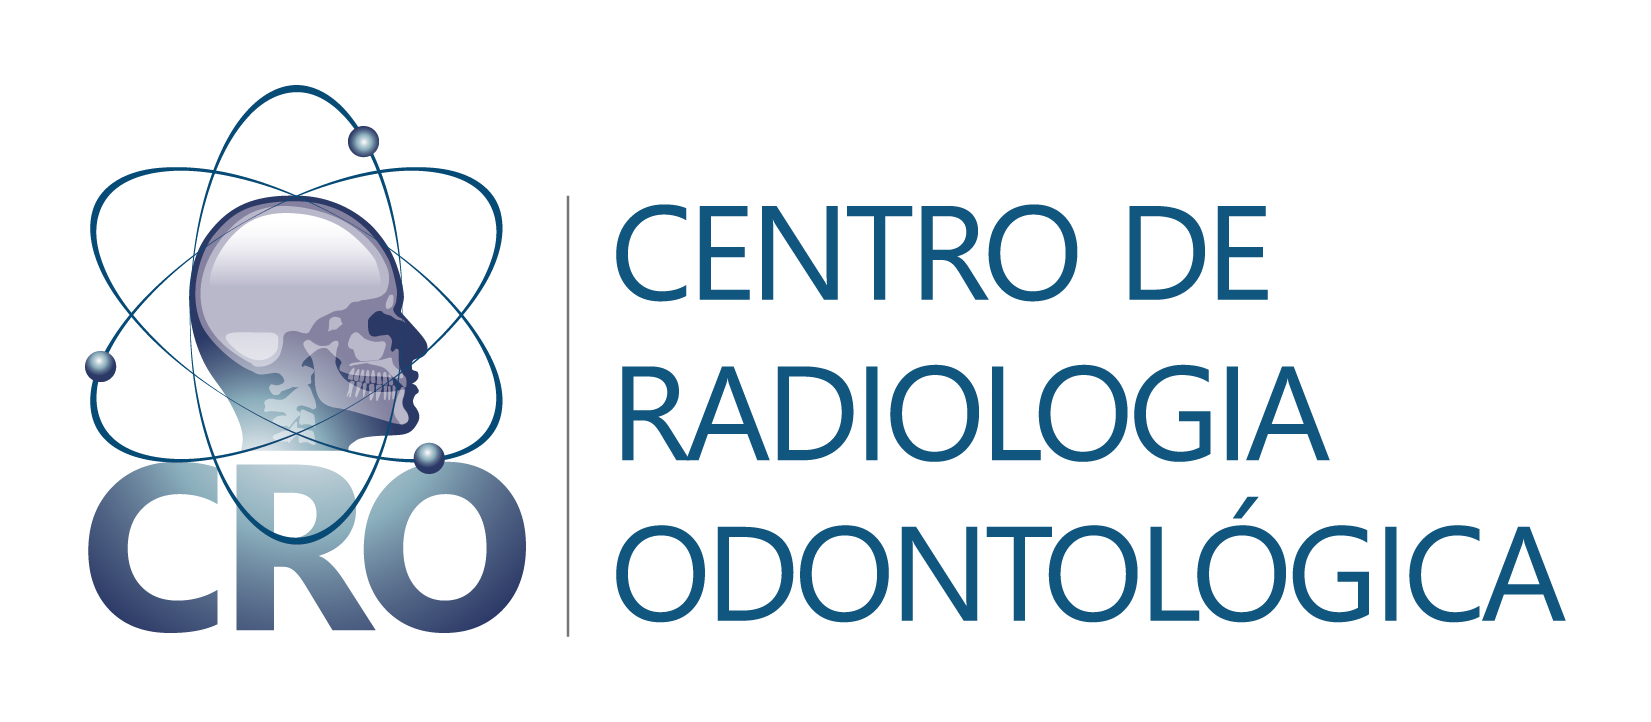 CRO – Centro de Radiologia Odontológica